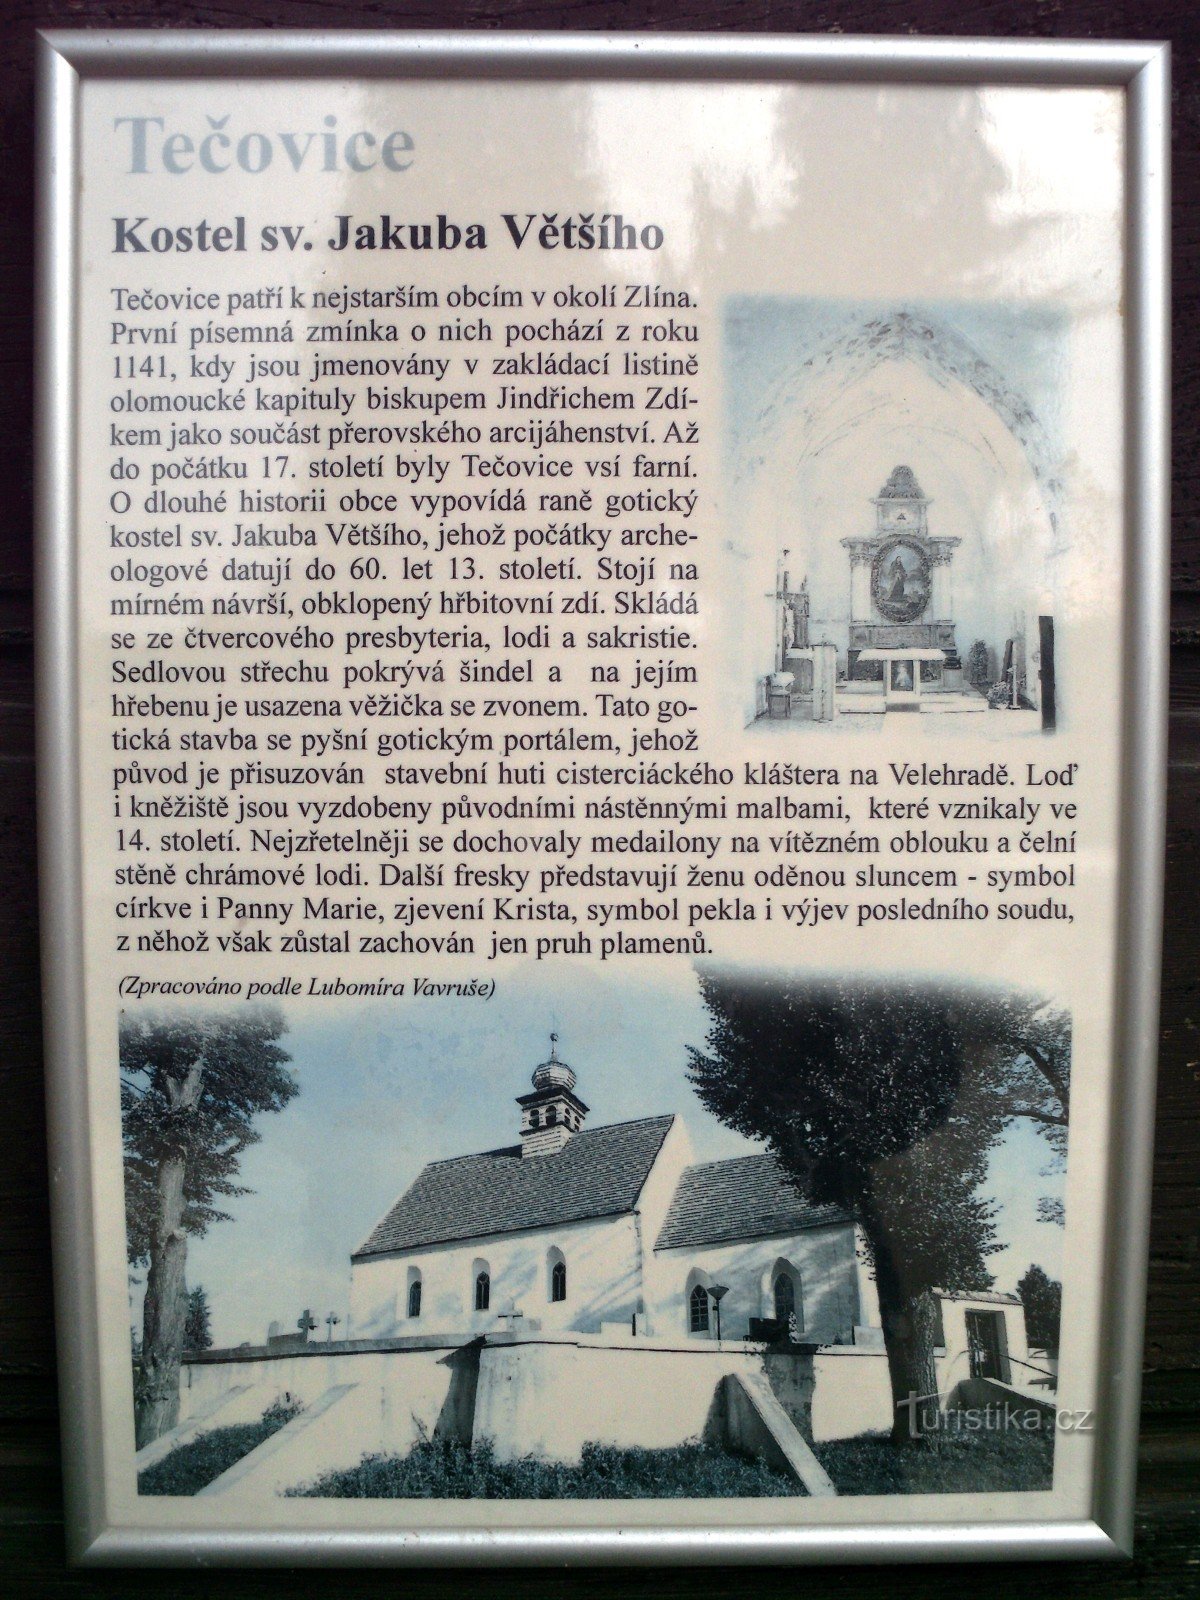 Tečovice - nhà thờ thánh James the Greater